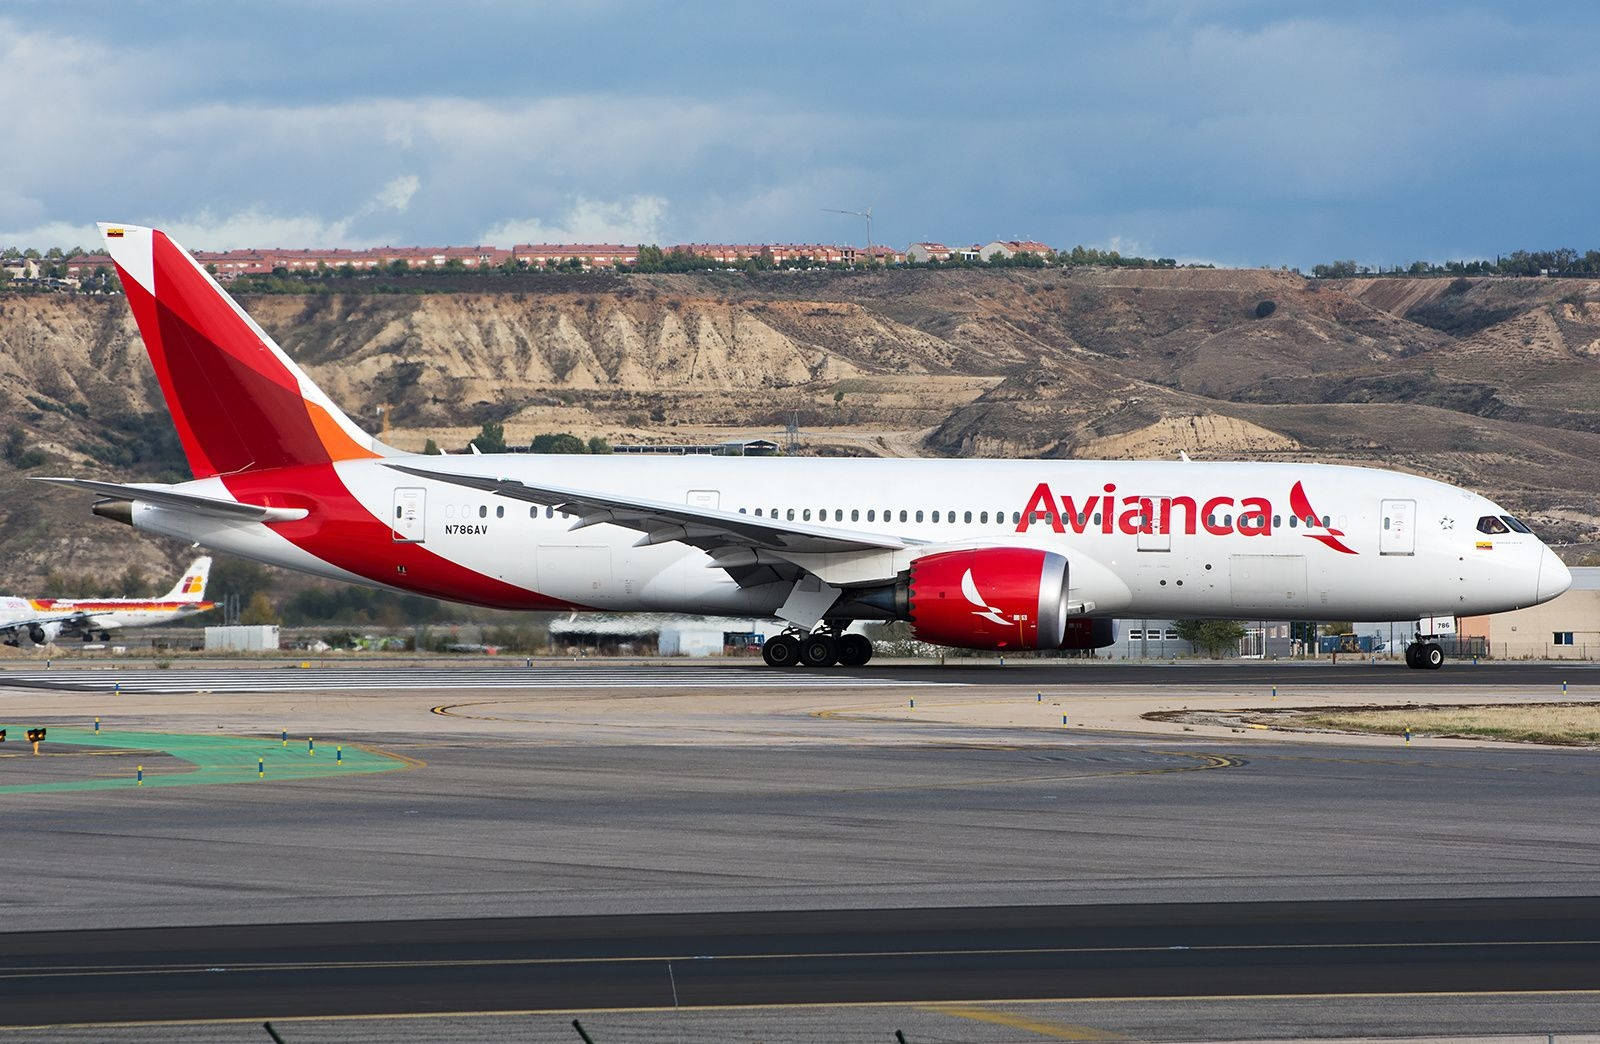 Aviancaboeing 787-8 Dreamliner Auf Dem Flughafen Madrid Wallpaper